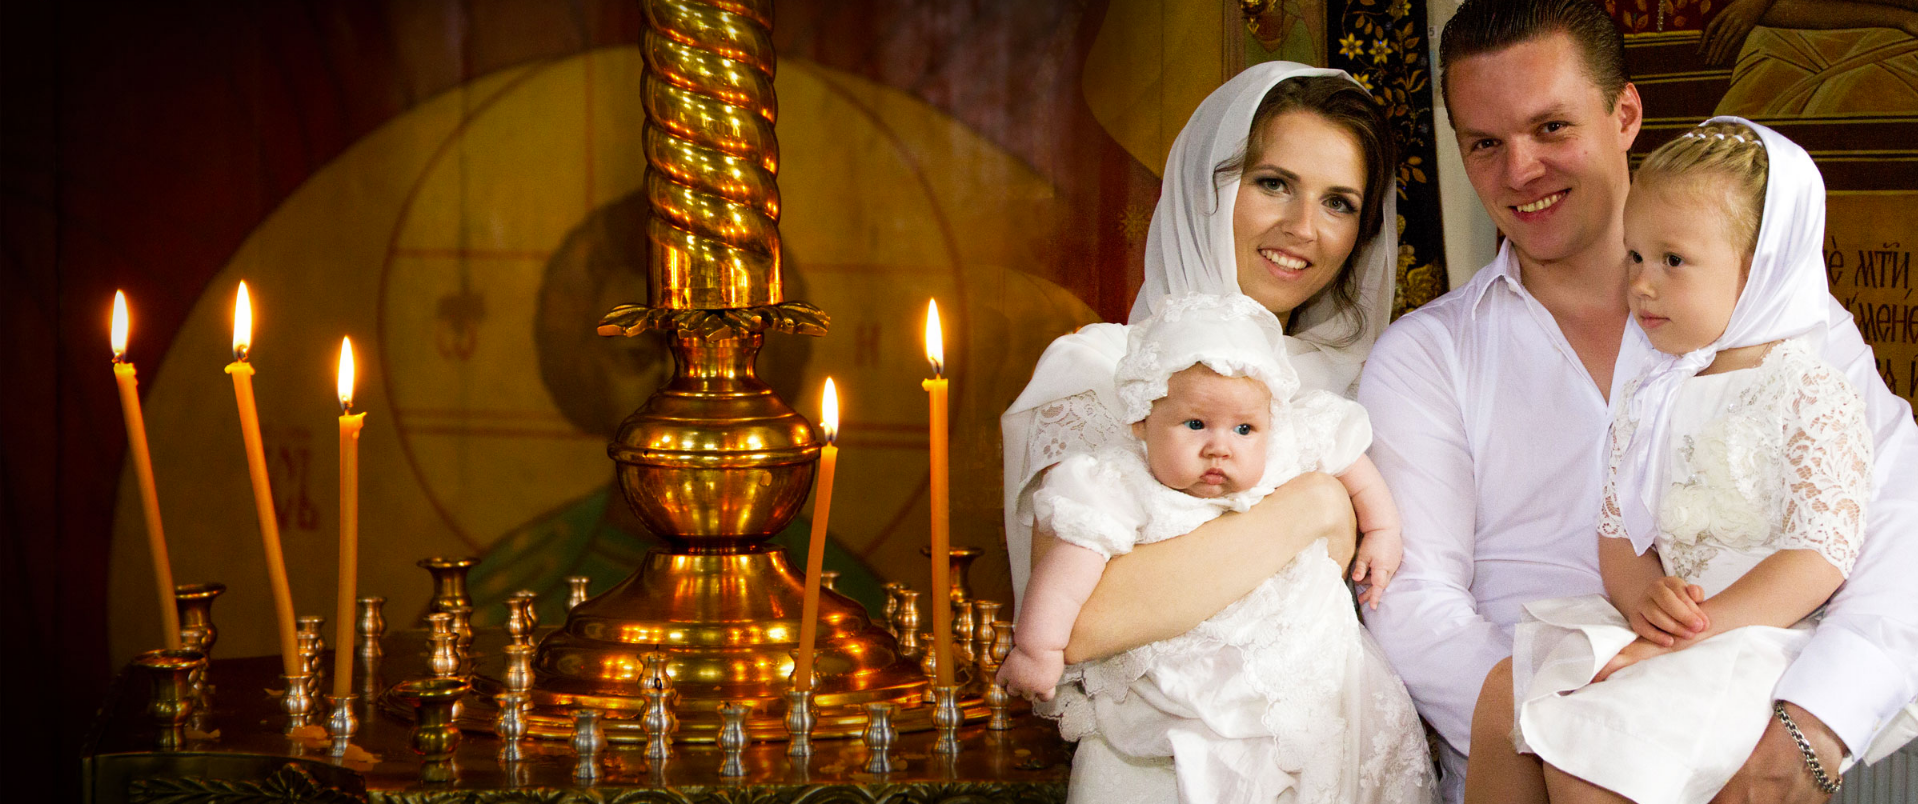 Православная семья. Православная семья в храме. Крестины. Крещение детей в церкви. Найти крестная